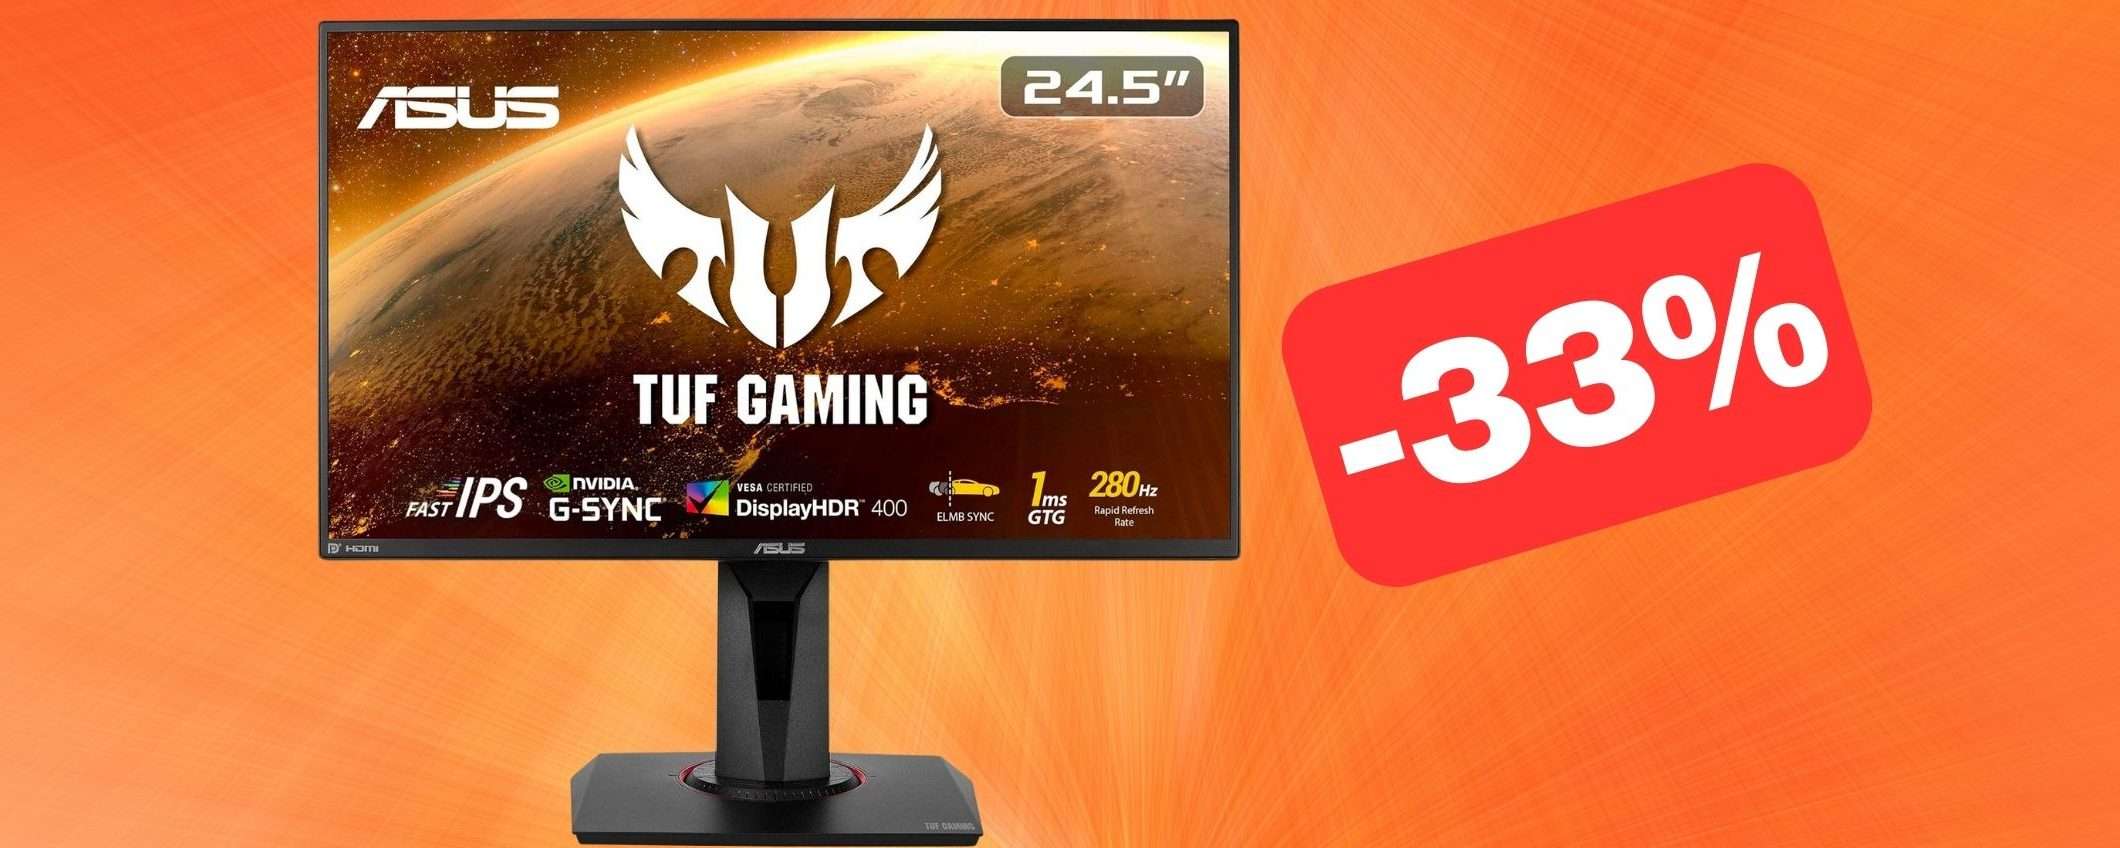 Monitor ASUS TUF Gaming 24.5